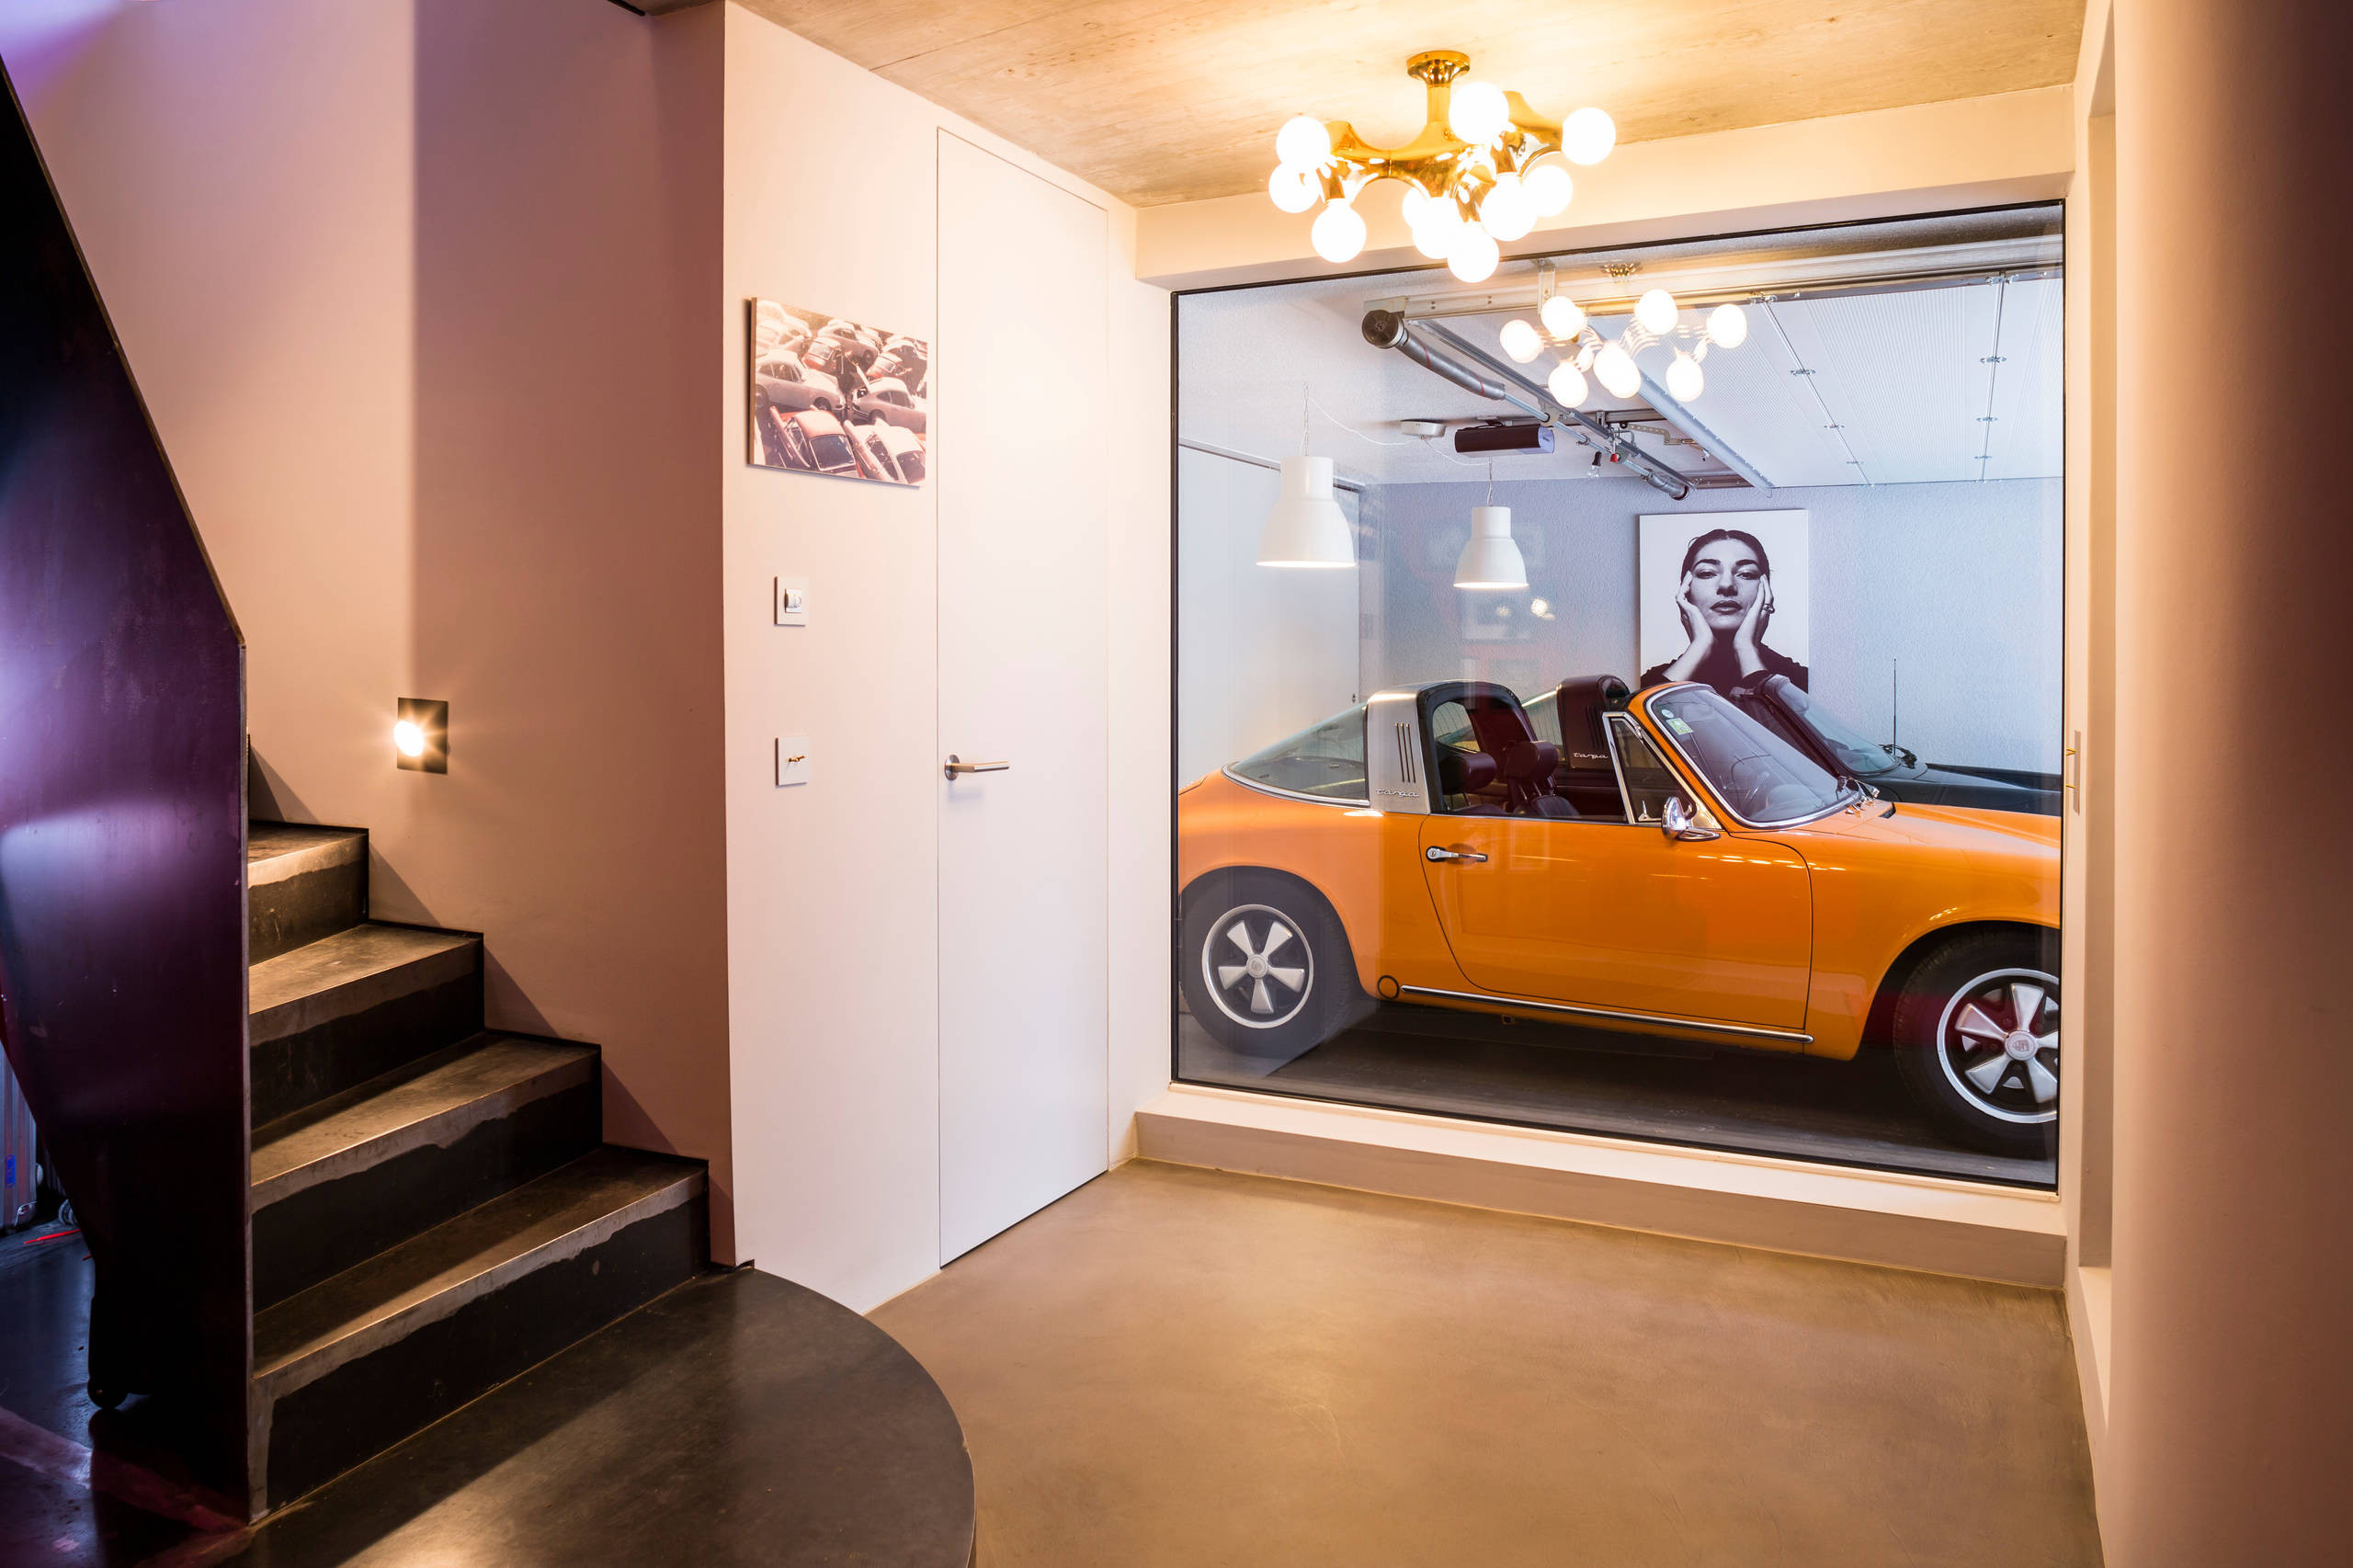 40 Abgefahrene Garagen: Wenn Der Porsche Im Wohnzimmer Parkt intended for Garage Im Wohnzimmer